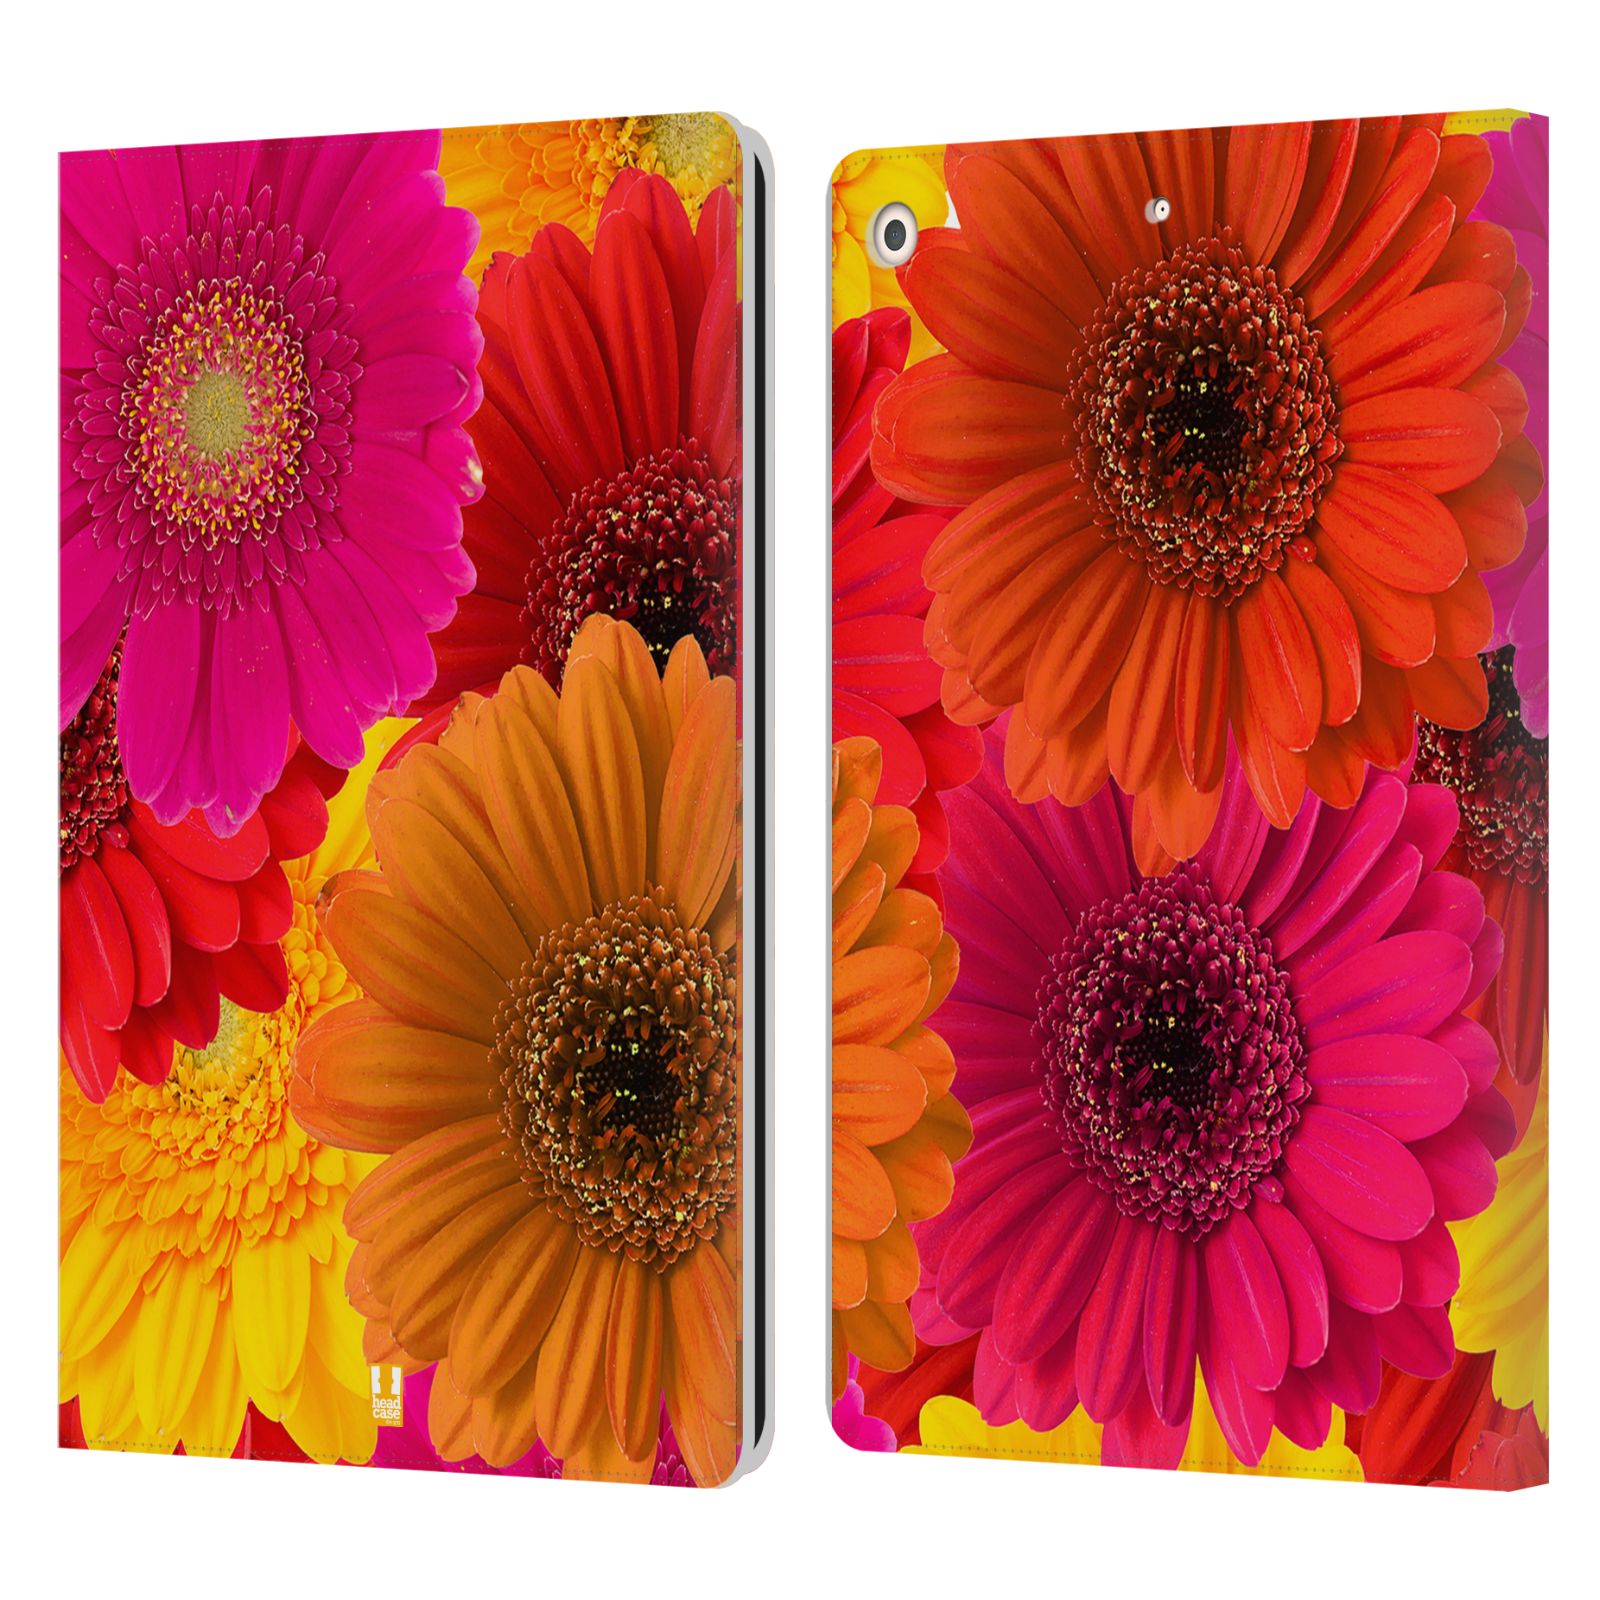 Pouzdro pro tablet Apple Ipad 10.2 - HEAD CASE - květy foto fialová, oranžová GERBERA